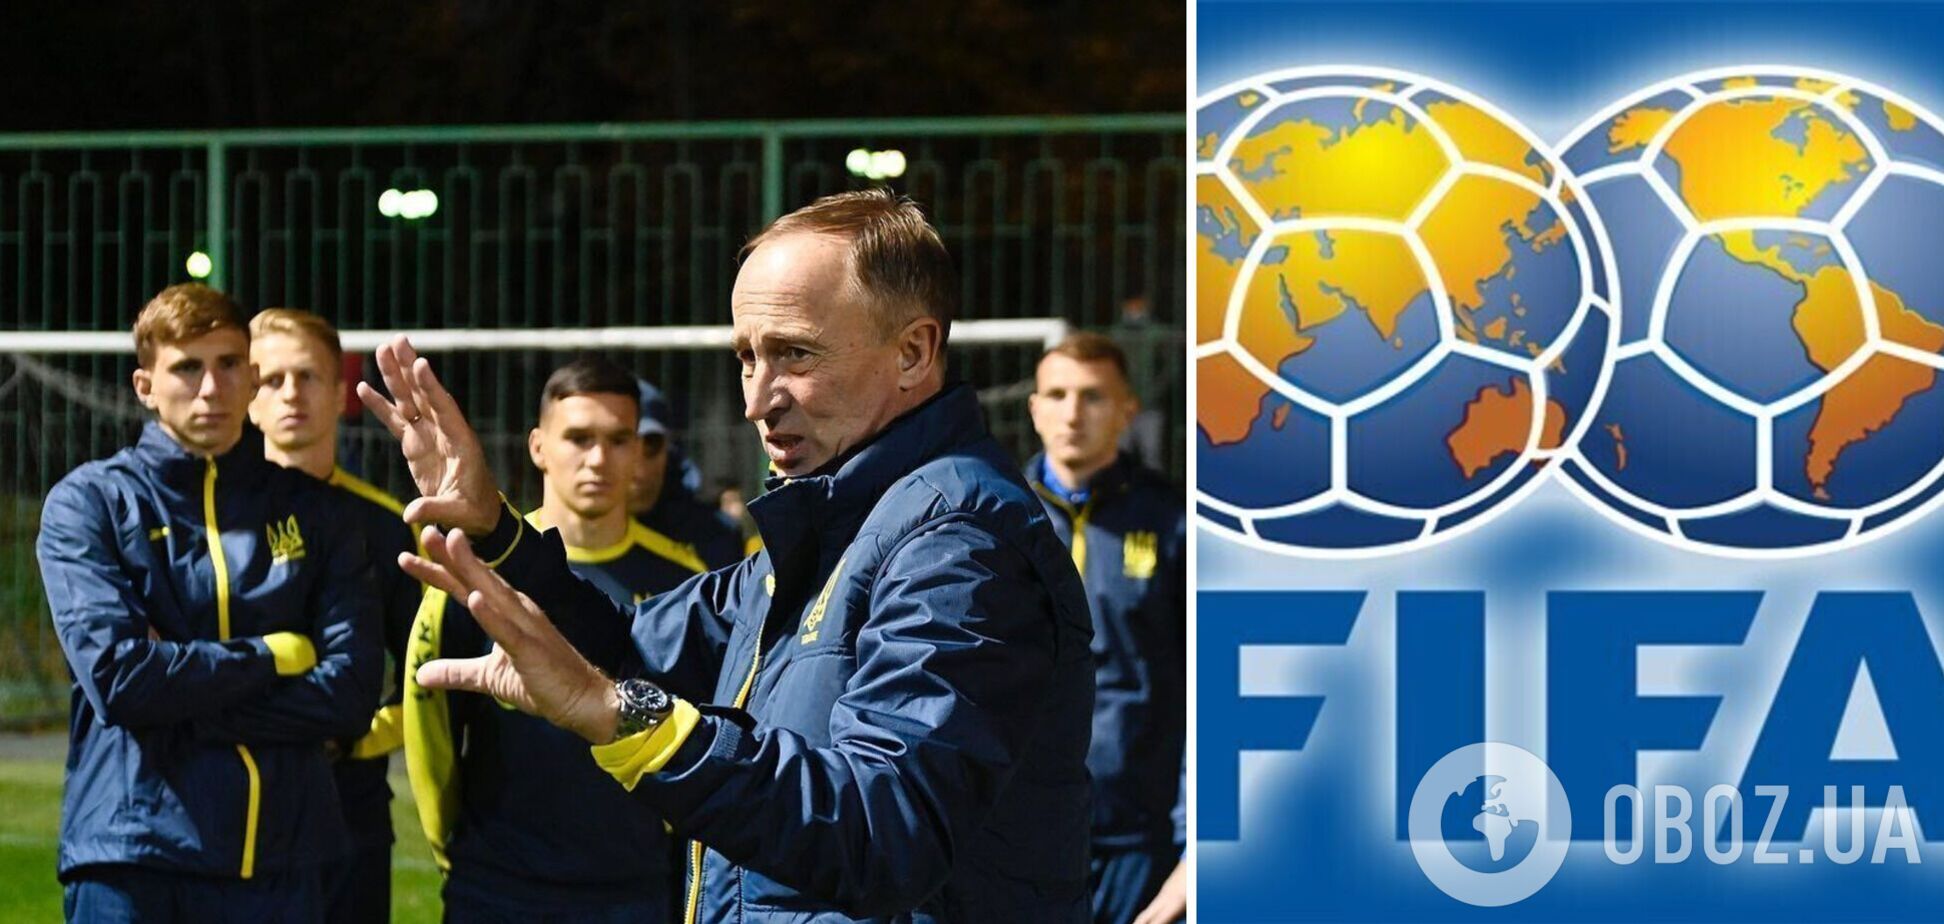 Украина может получить прямую путевку на футбольный ЧМ-2022, но есть сложности